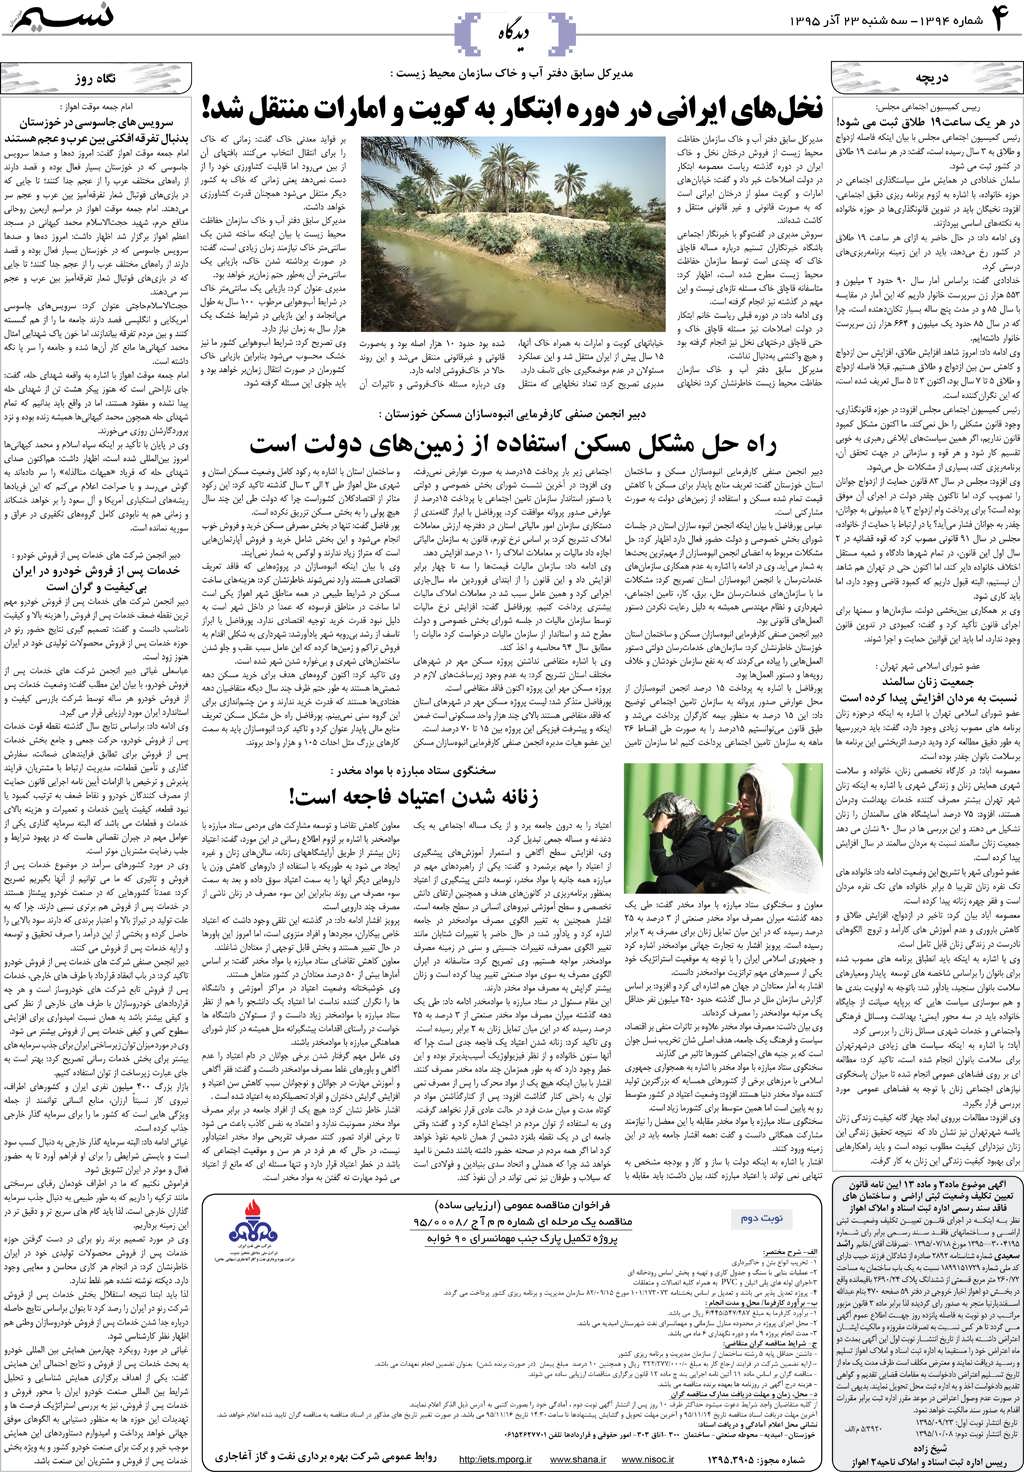 صفحه دیدگاه روزنامه نسیم شماره 1394